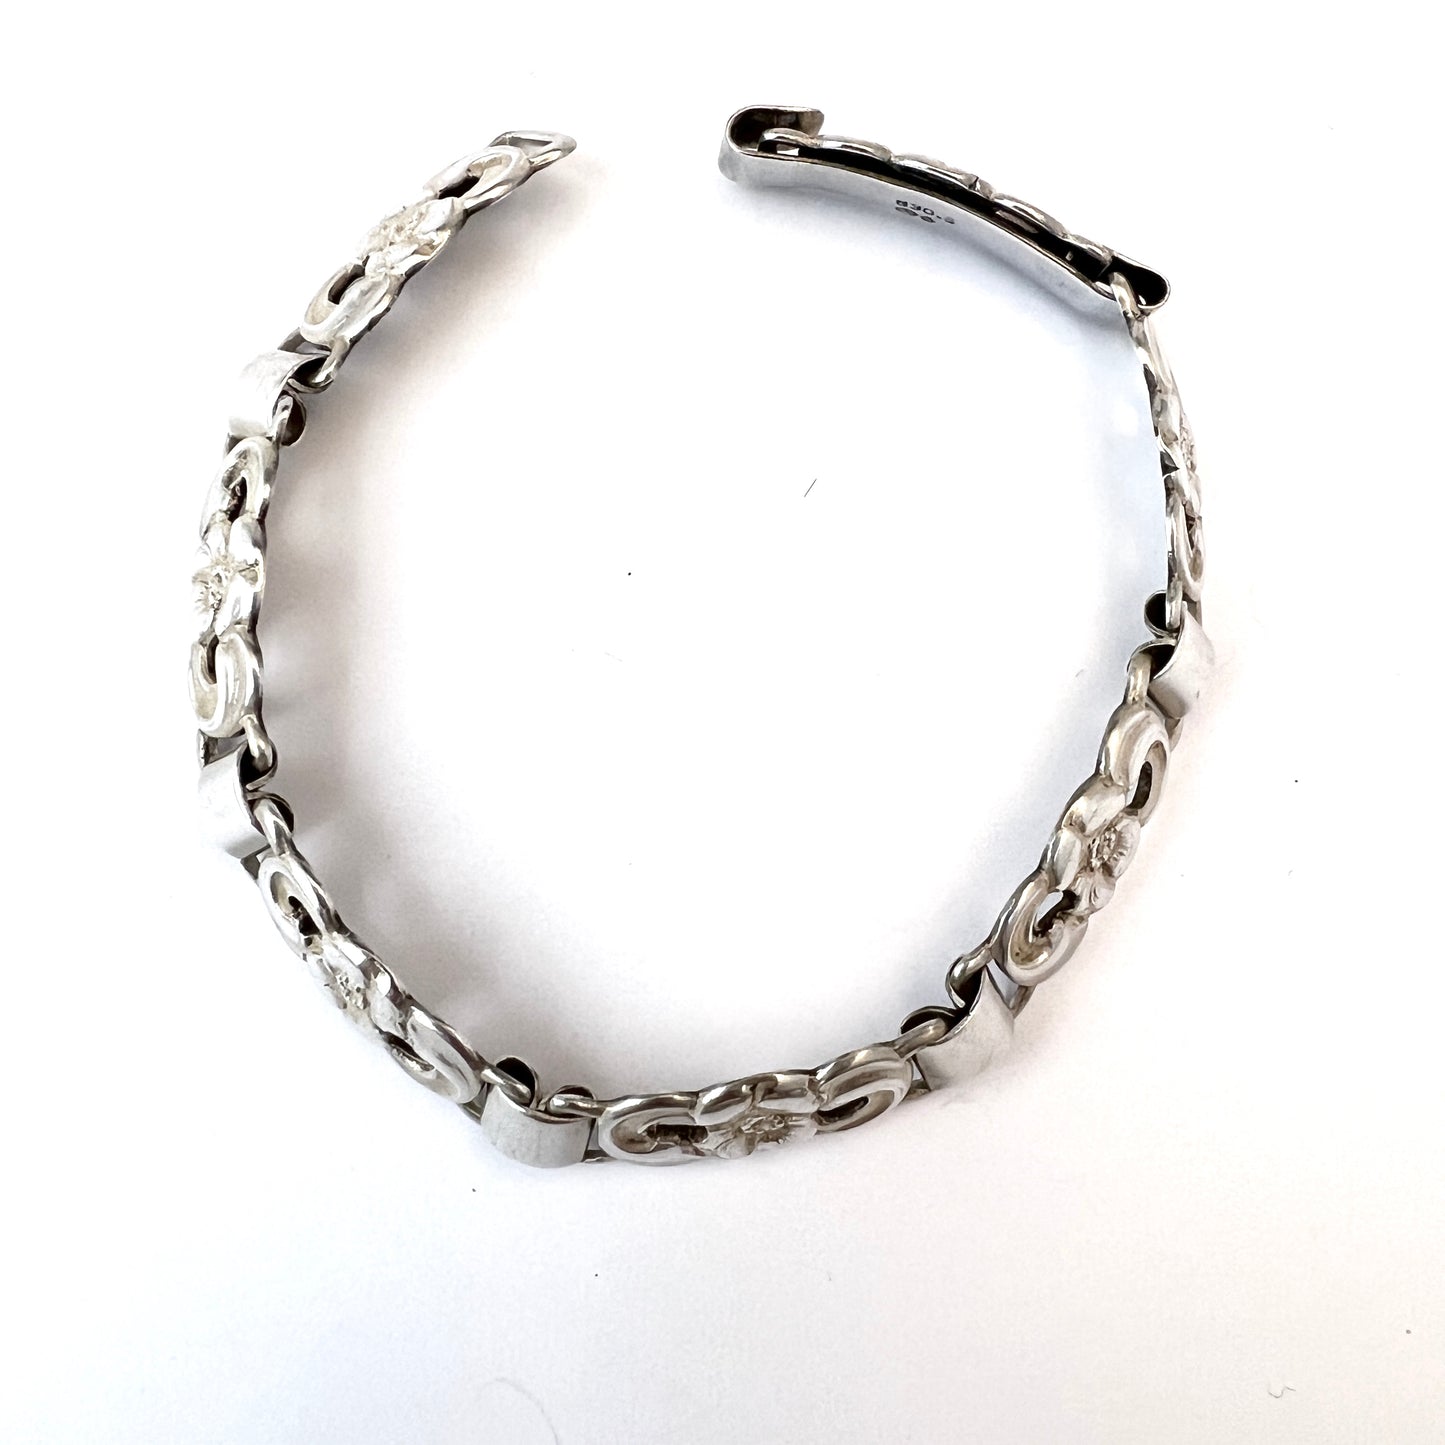 Denmark 1940s Solid Silver Link Bracelet. Probably Eiler & Marløe